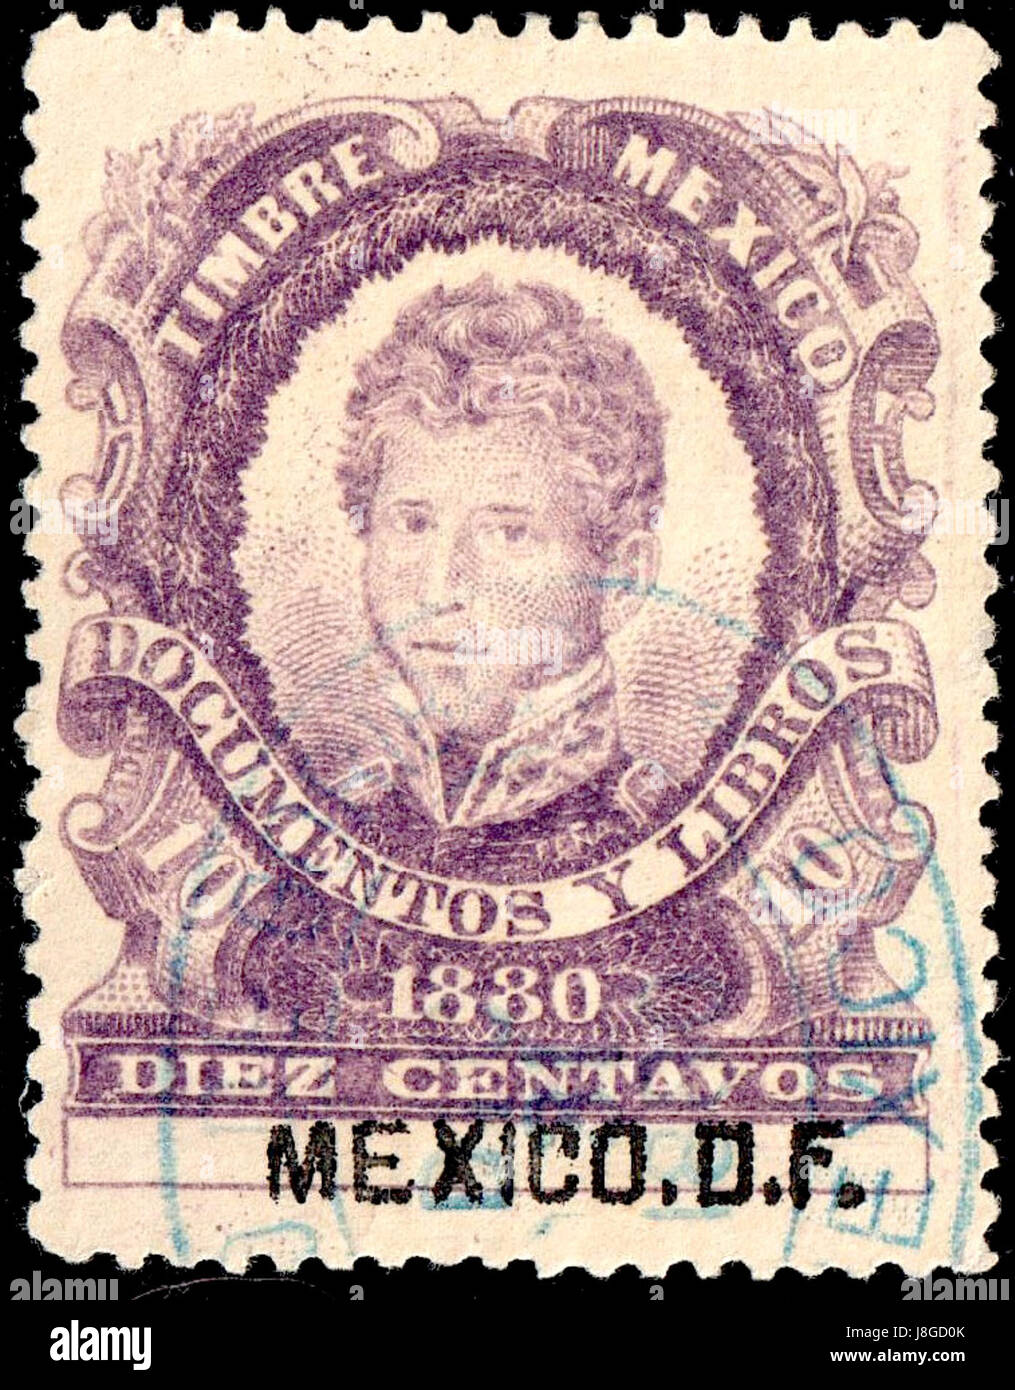 Mexico 1880 revenue F75 Mexico DF Stock Photo